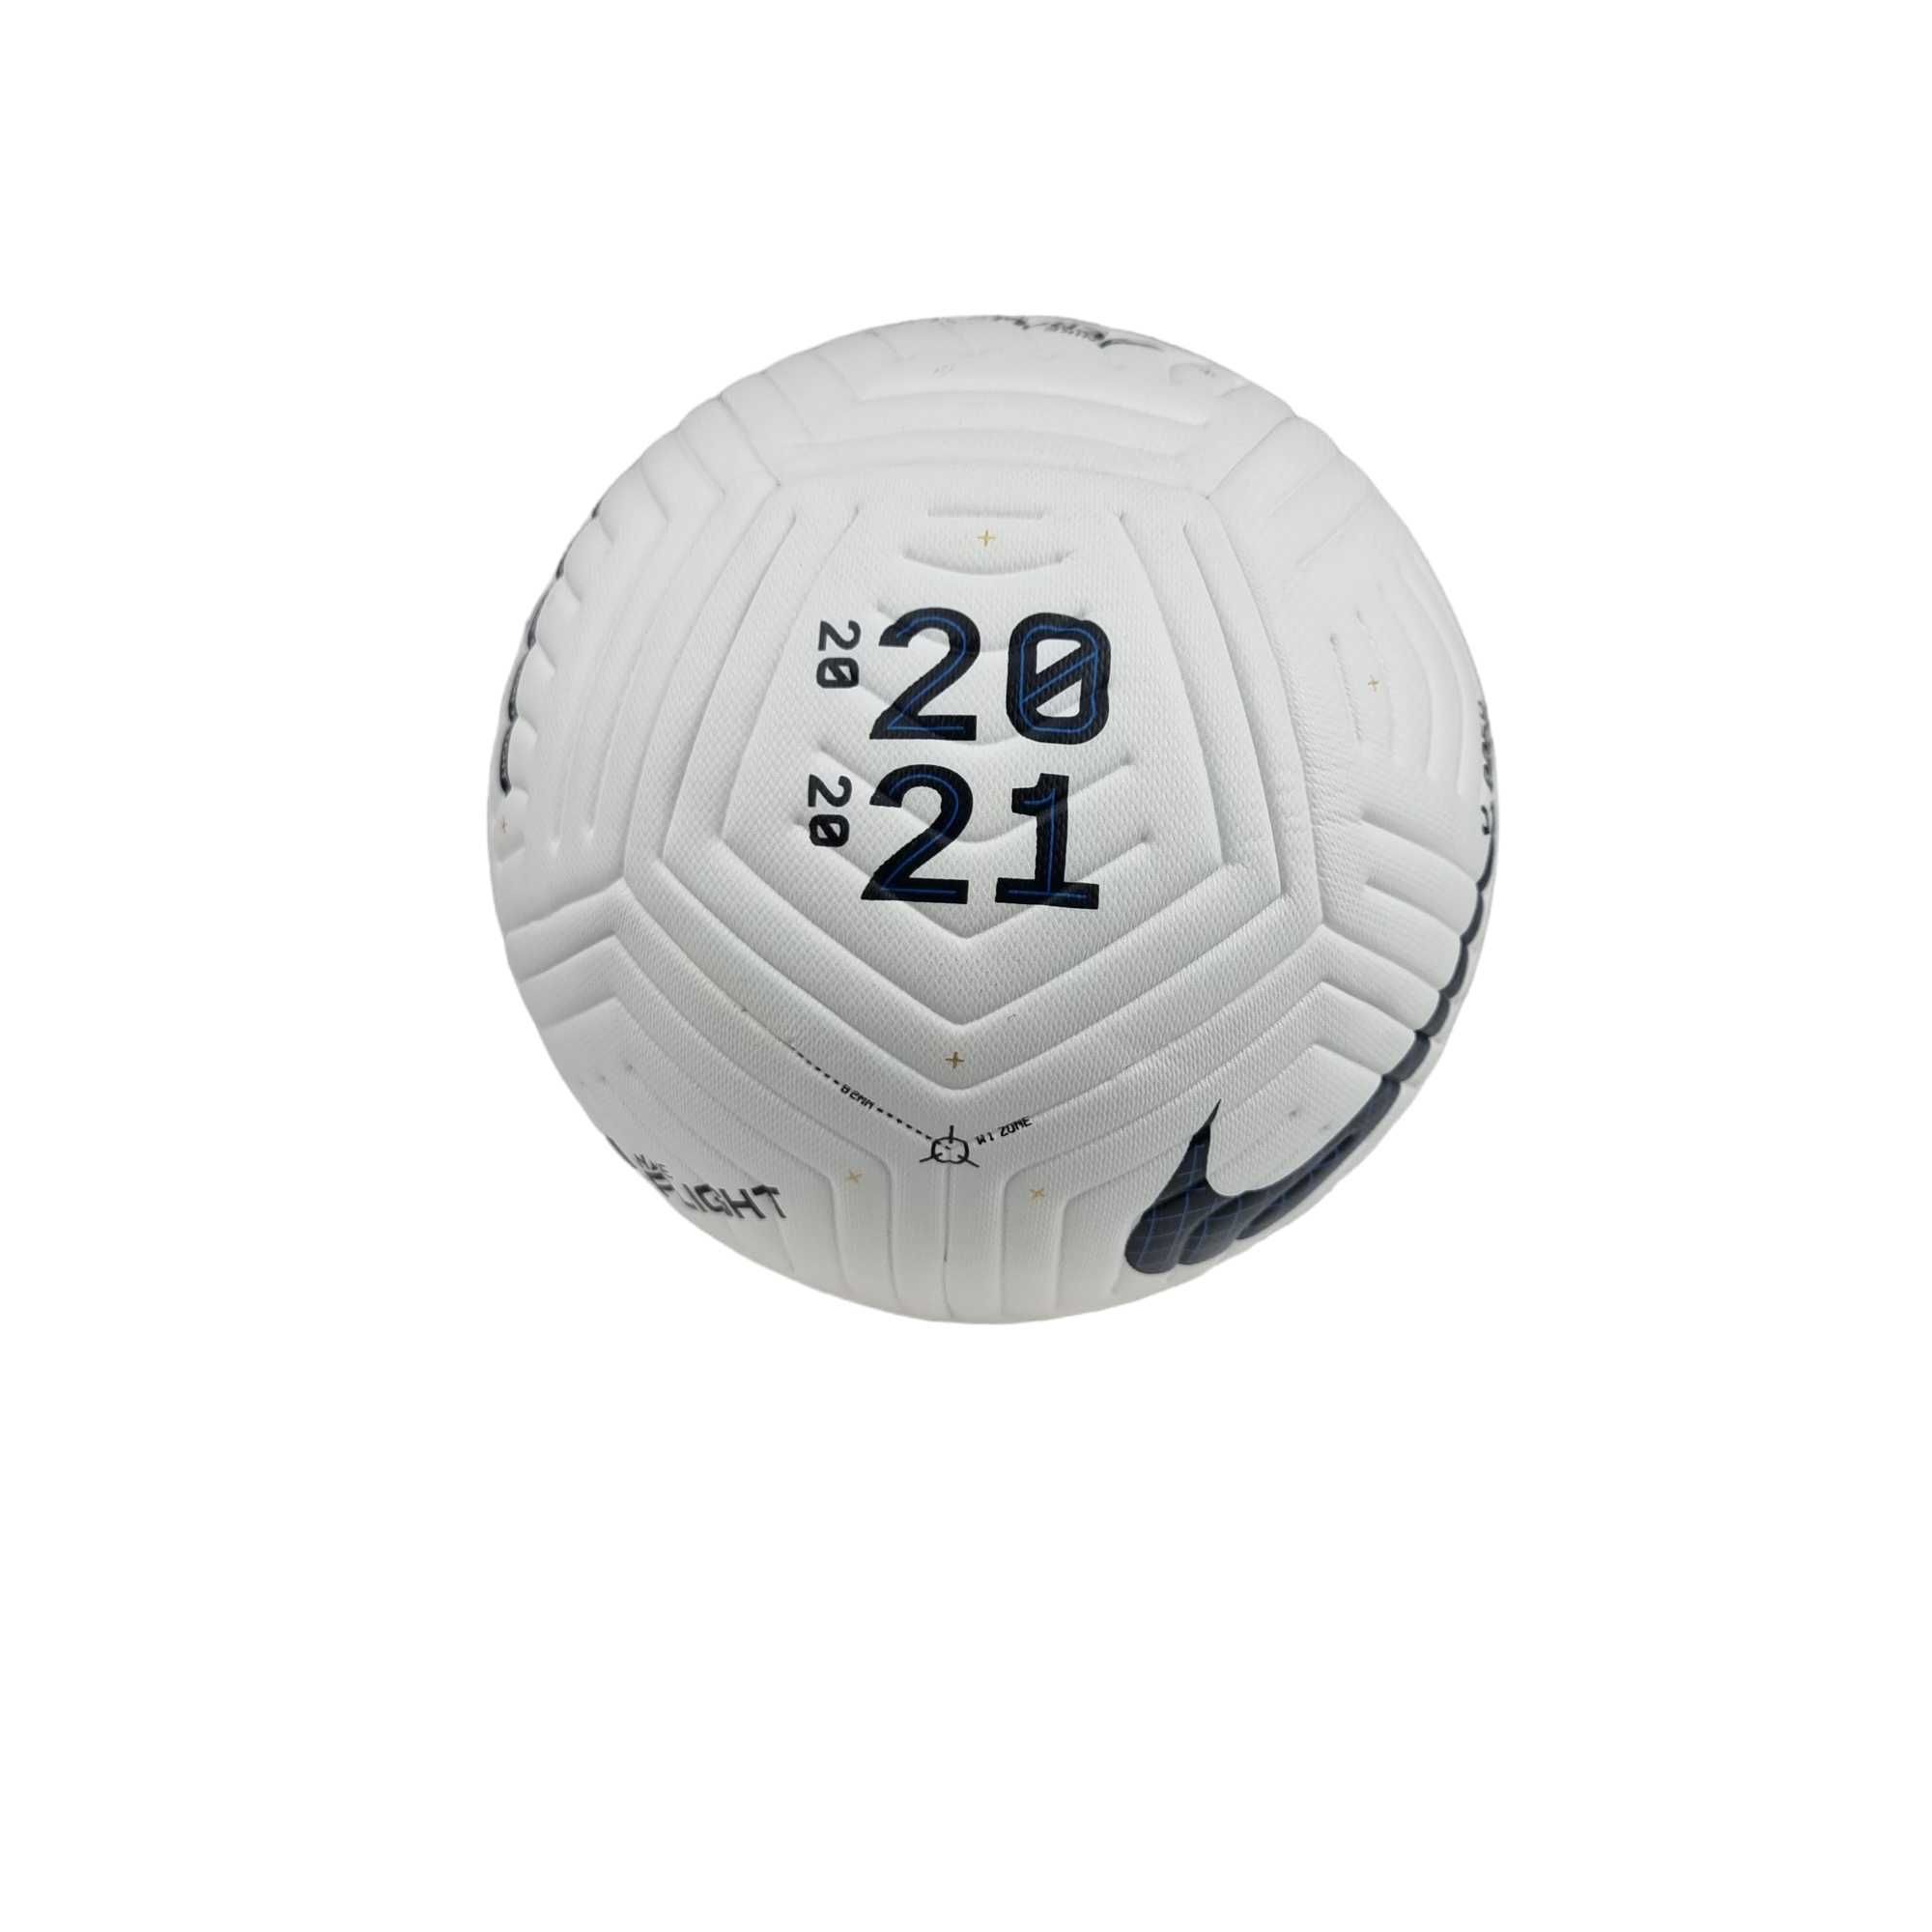 Мяч футбольный 5 Nike Flight